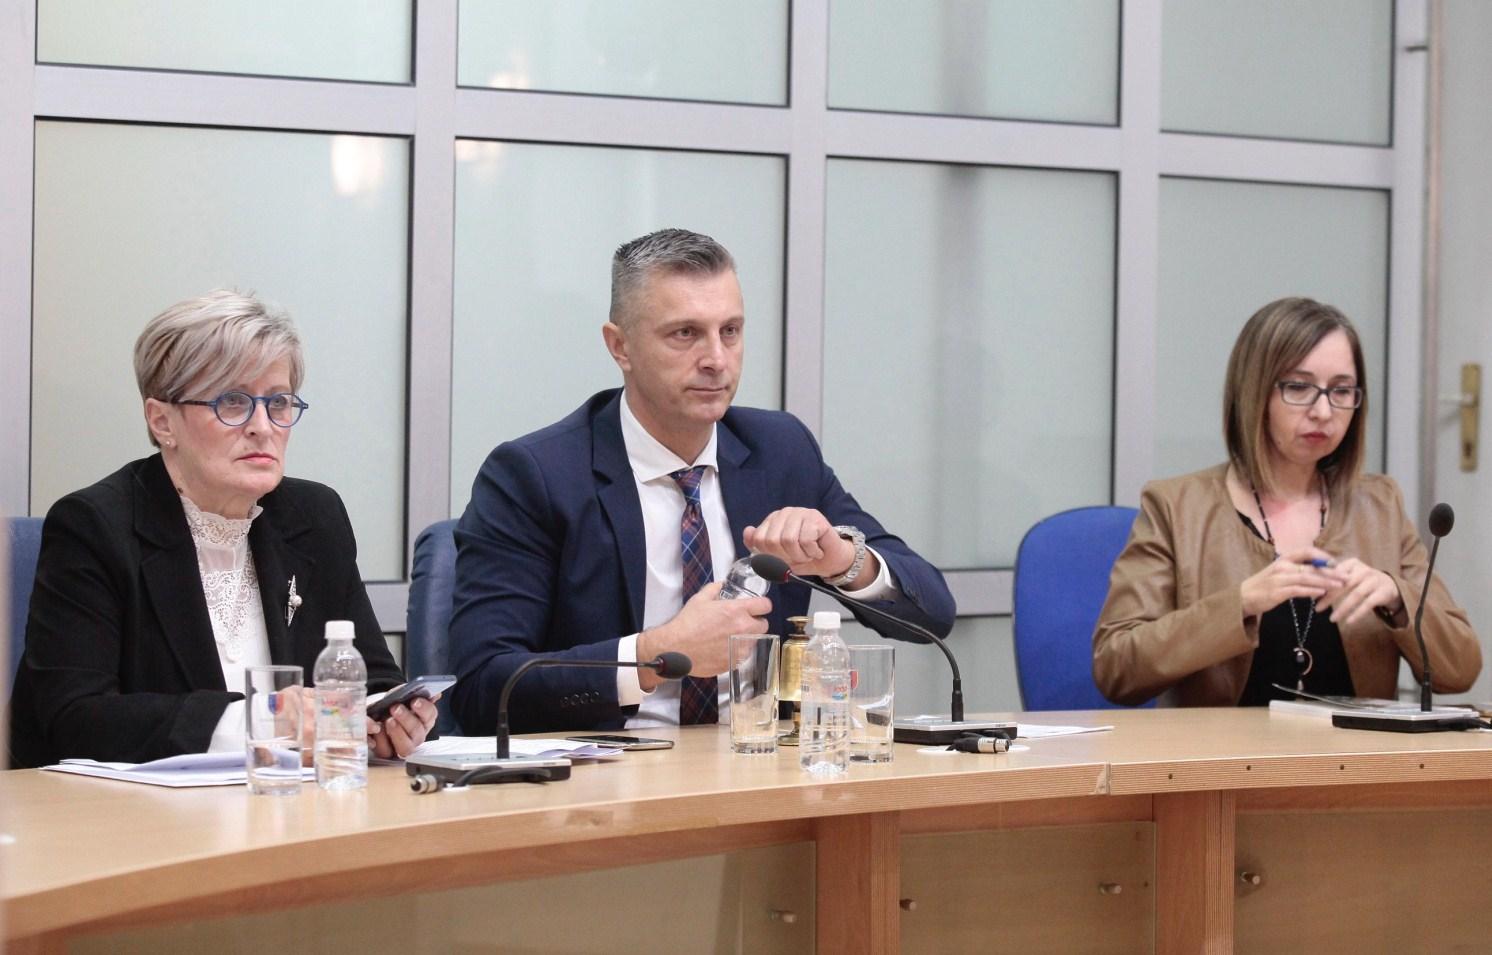 Čelik uputio otvoreno pismo ambasadoru Srbije zbog uvreda na račun Jovanovića i KS